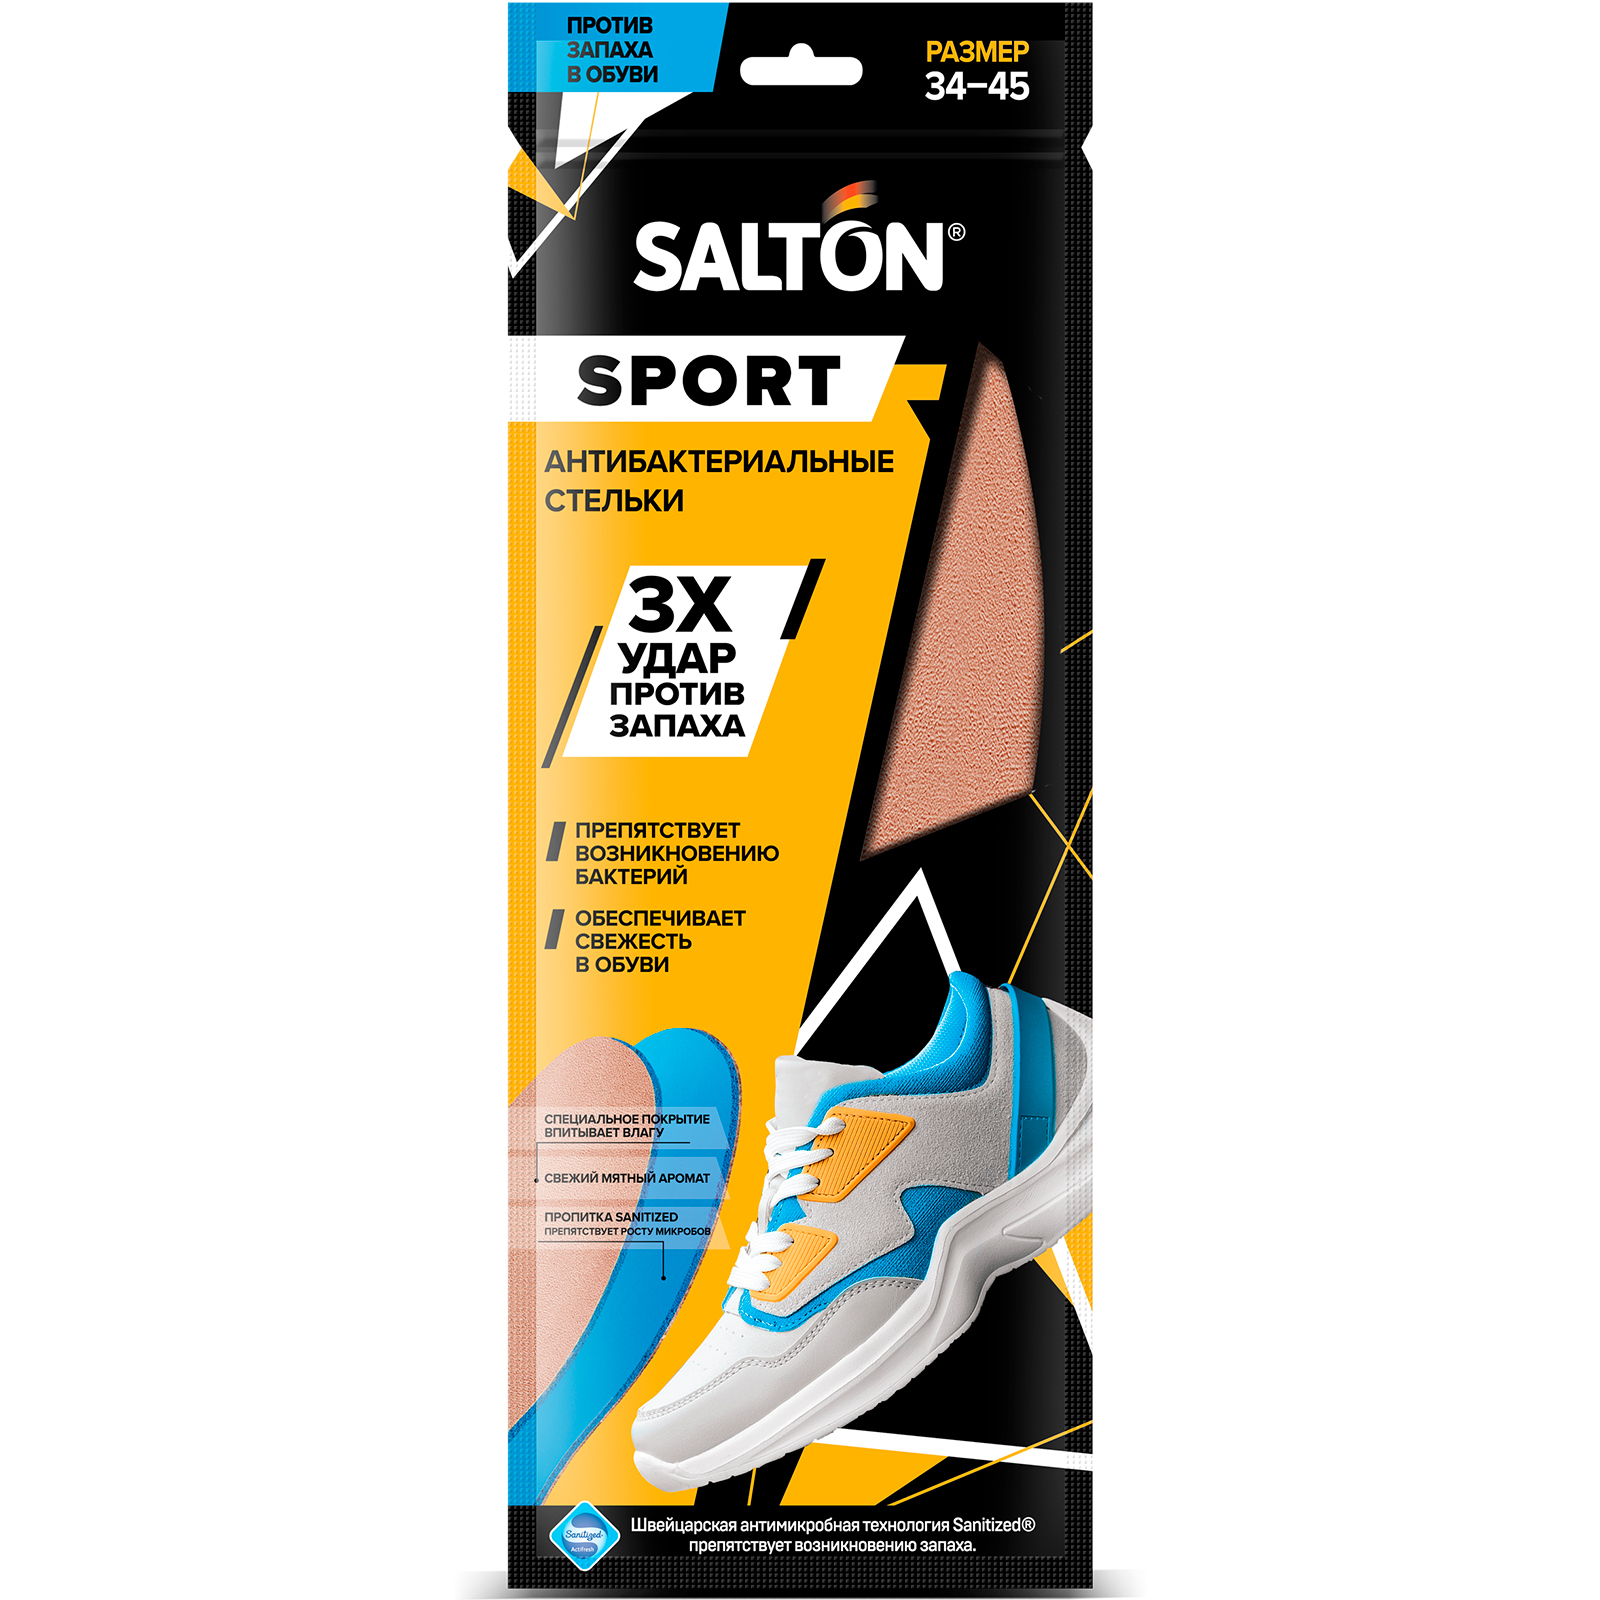 Стельки Salton Sport против запаха в спортивной обуви, антибактериальные, универсальные стельки для обуви salton универсальные 4 сезона